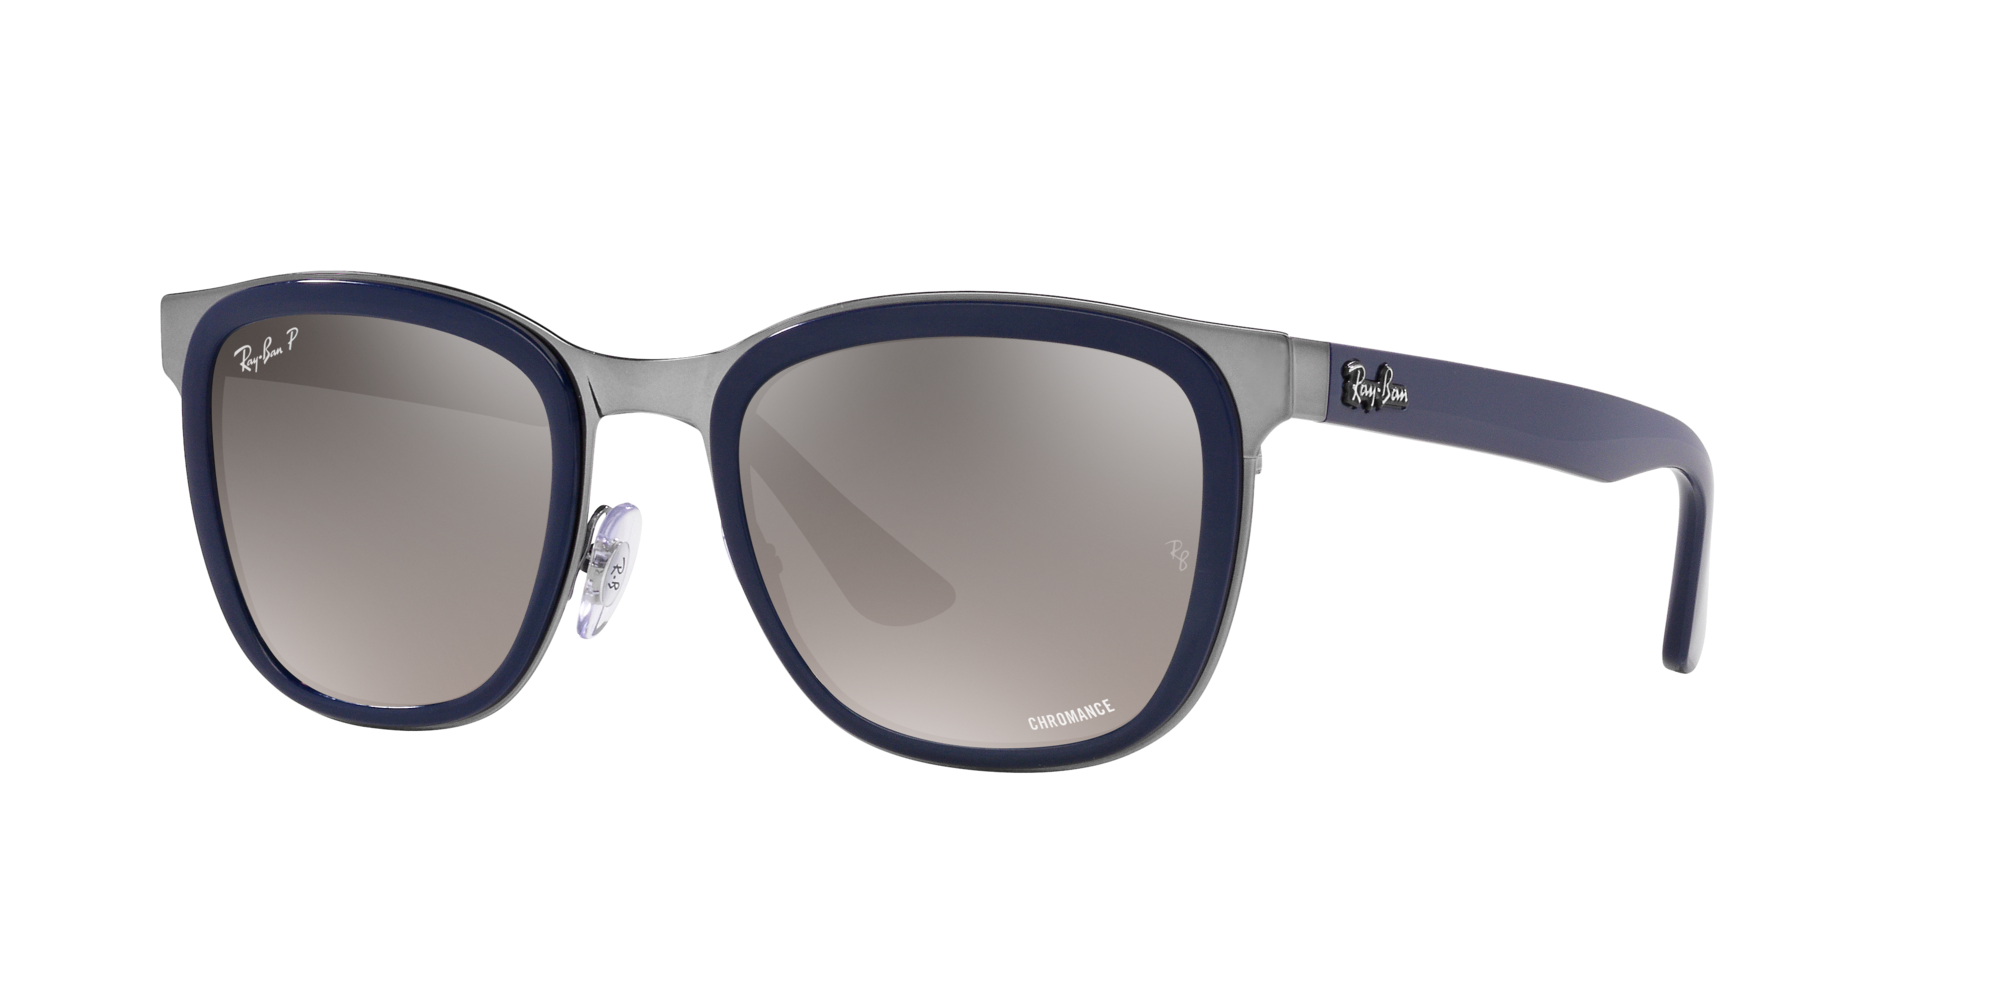 Ray-Ban Wayfarer Sunglasses | Groupon Goods